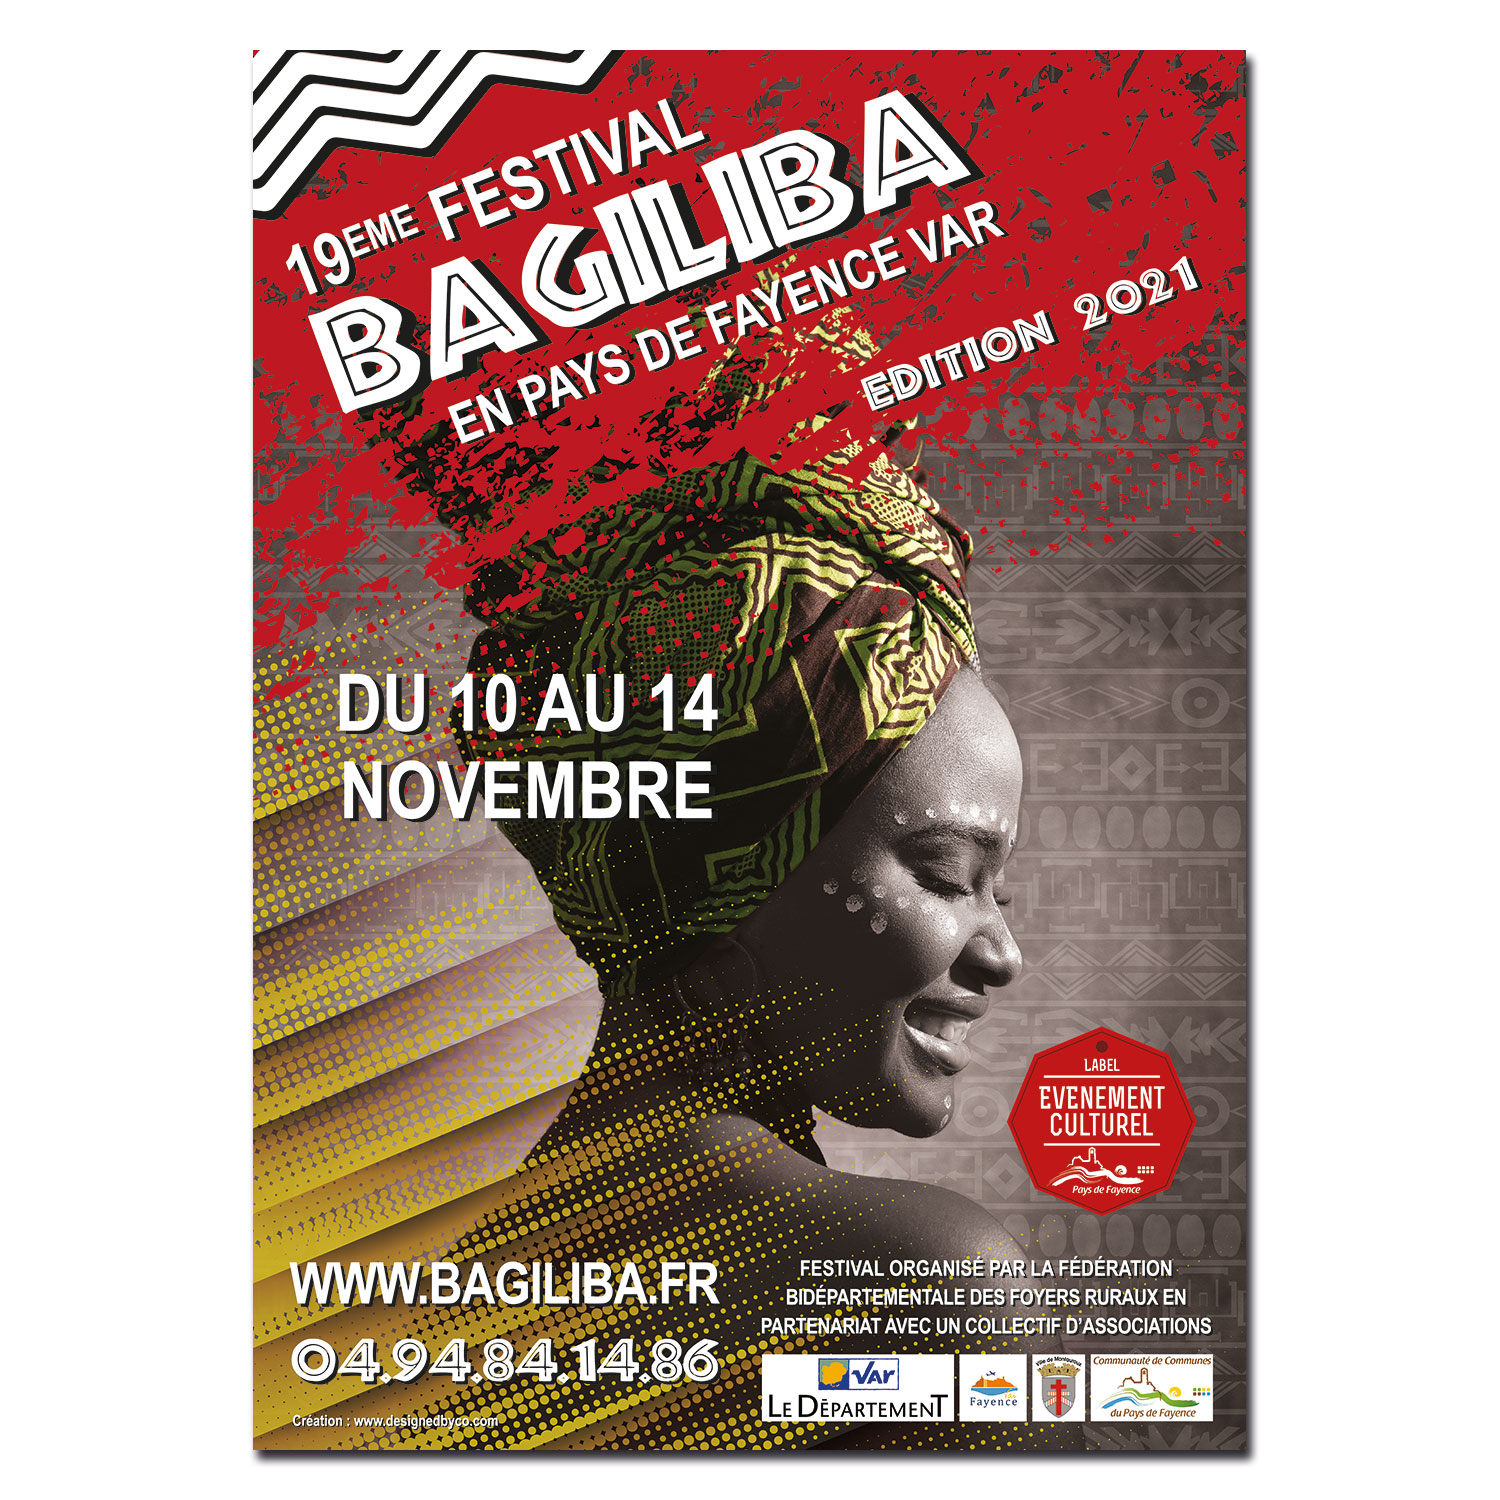 Affiche pour la 19ème édition du festial africain Bagiliba en Pays de Fayence